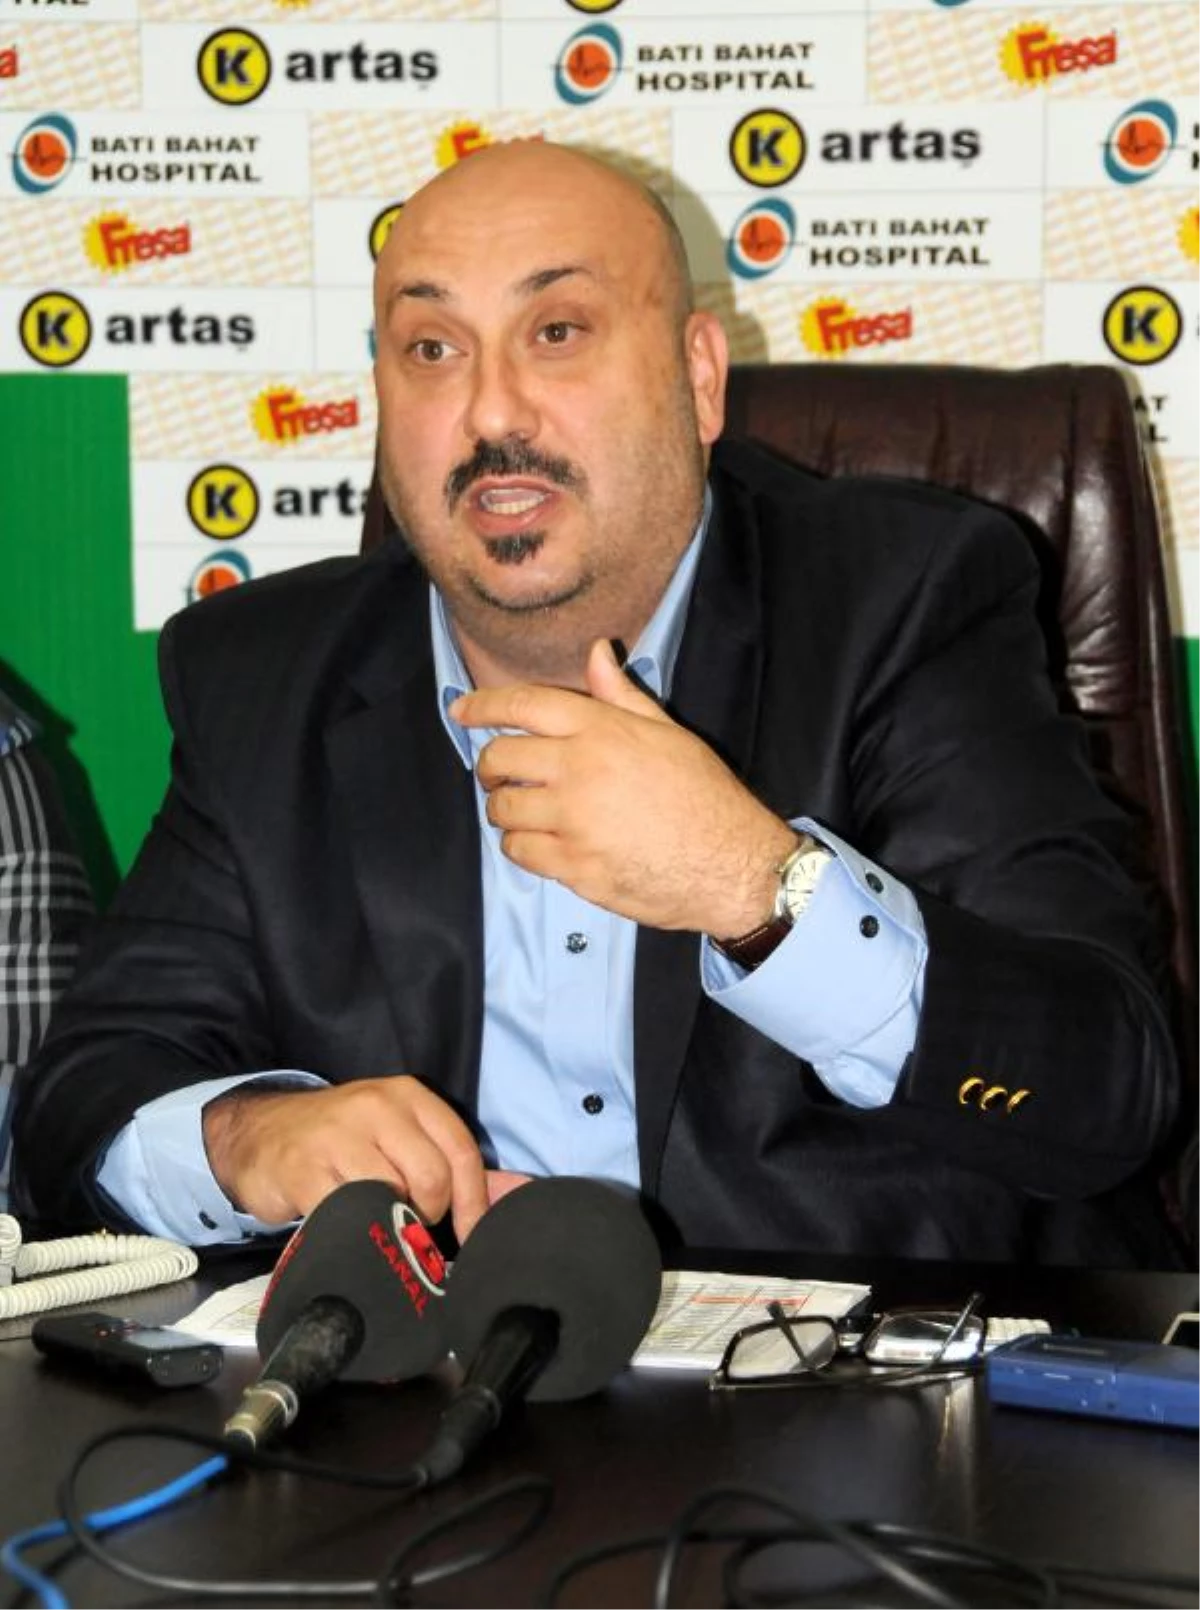 Giresunspor Başkanı Bozbağ: "Yeni Teknik Direktör Arıyoruz"